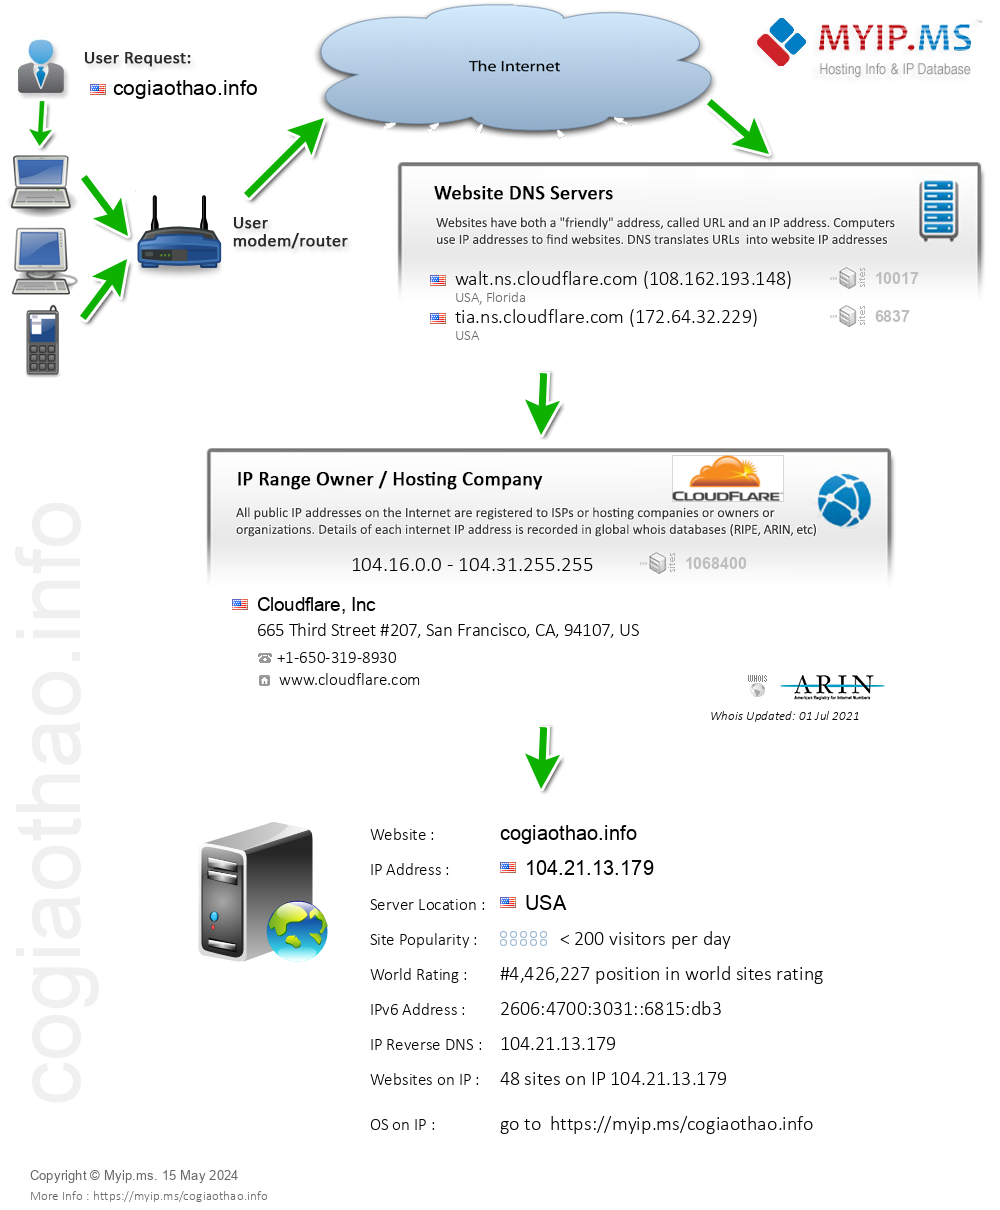 Cogiaothao.info - Website Hosting Visual IP Diagram